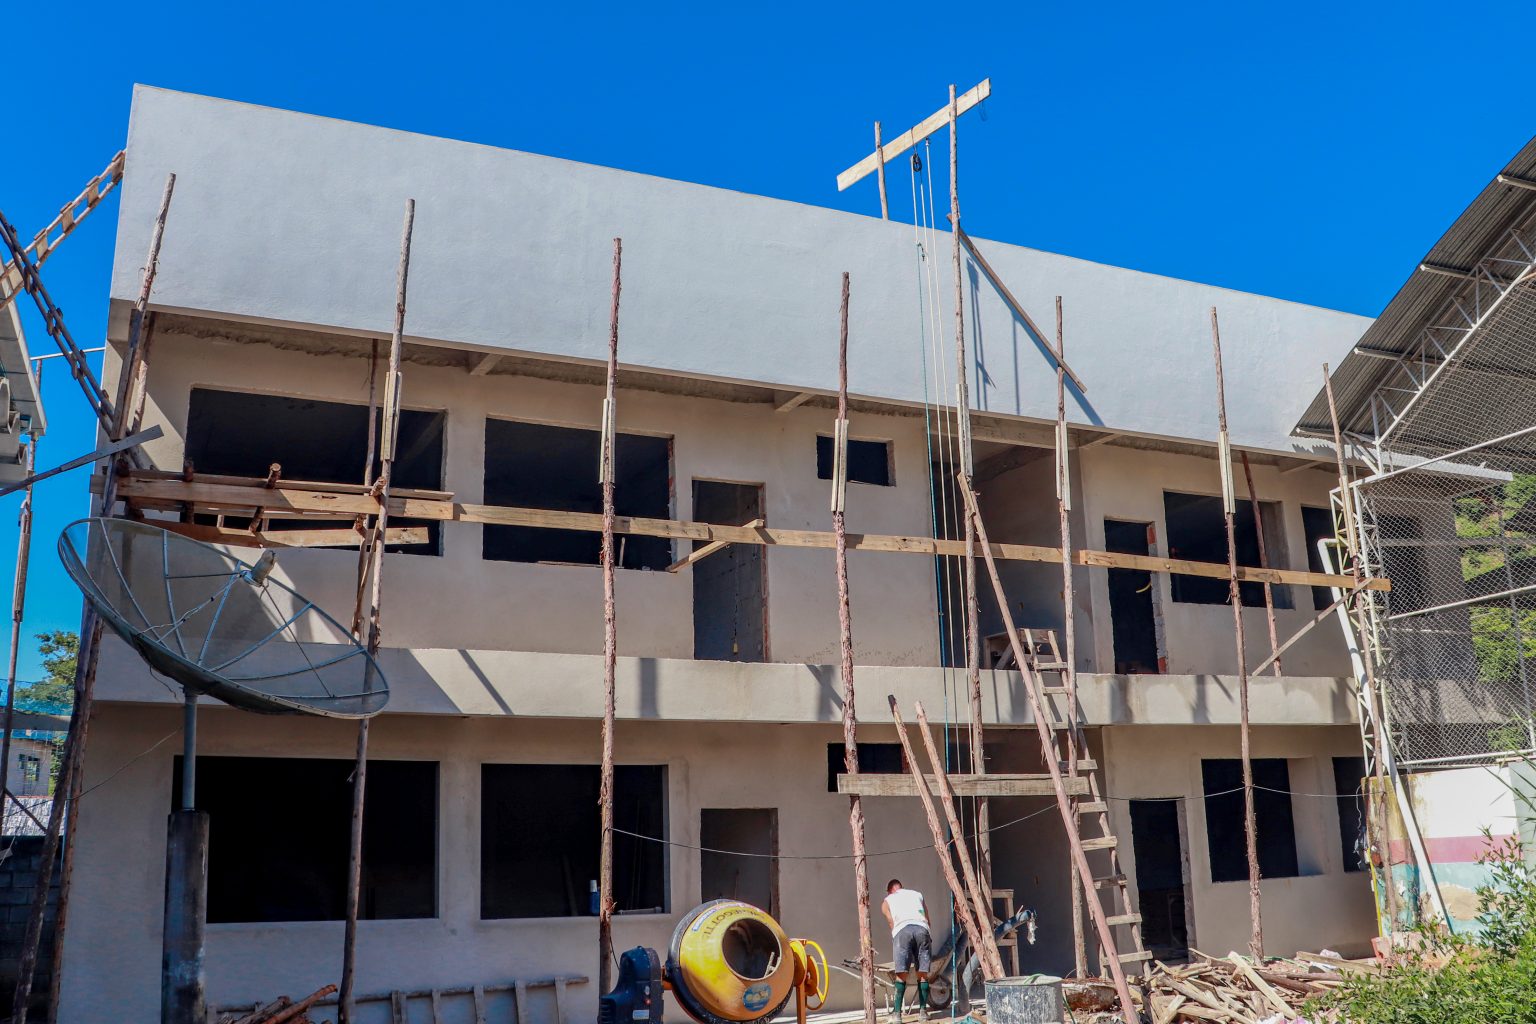 Expansão Educacional em Muqui: Escola Municipal “Frei Pedro Domingo Izcara” Ampliada com Recursos do FUNPAES